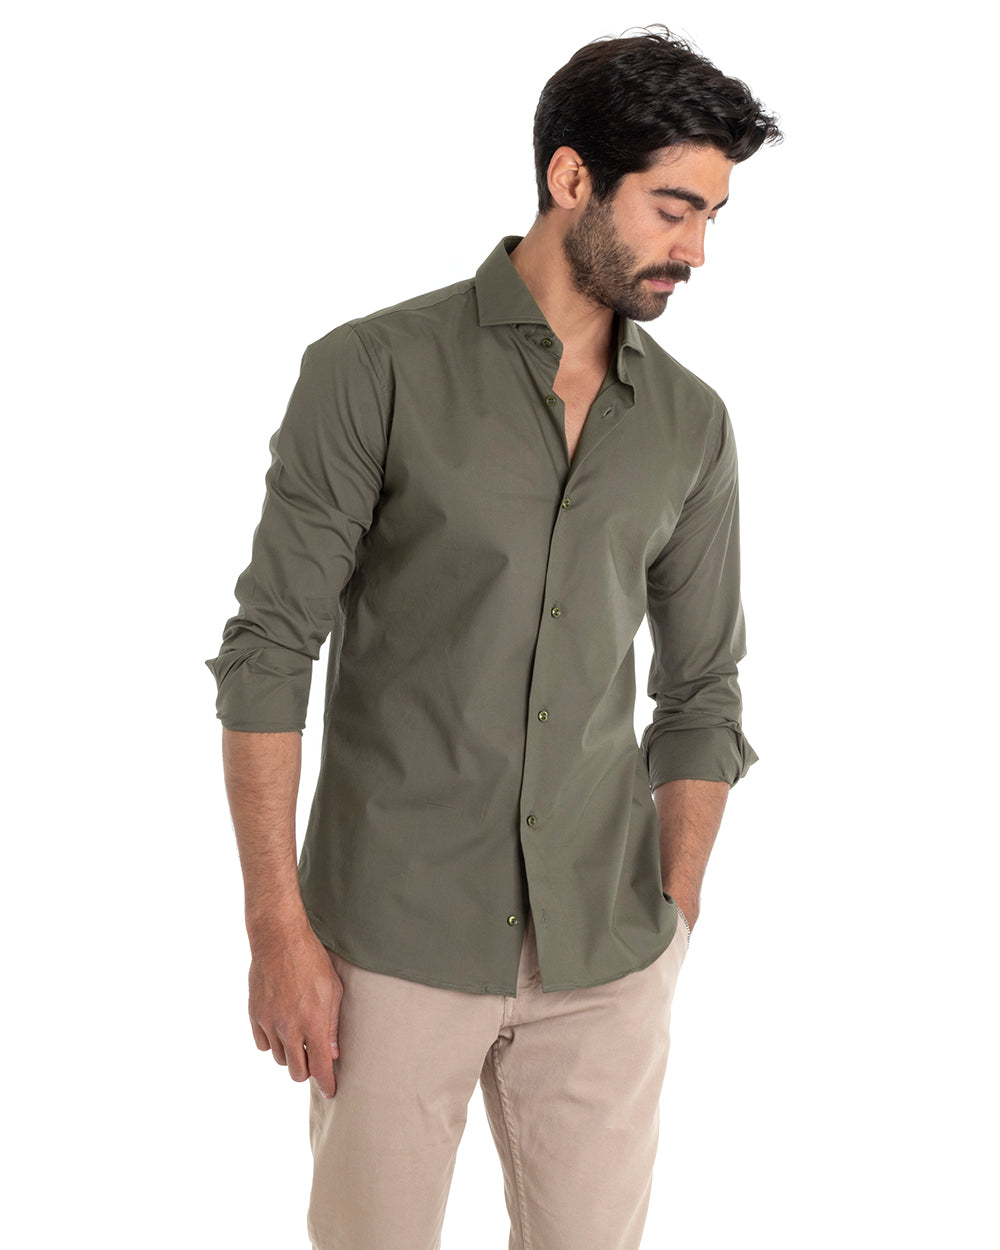 Camicia Uomo Sartoriale Con Colletto Manica Lunga Basic Cotone Morbido Verde Militare Regular Fit GIOSAL-C2401A